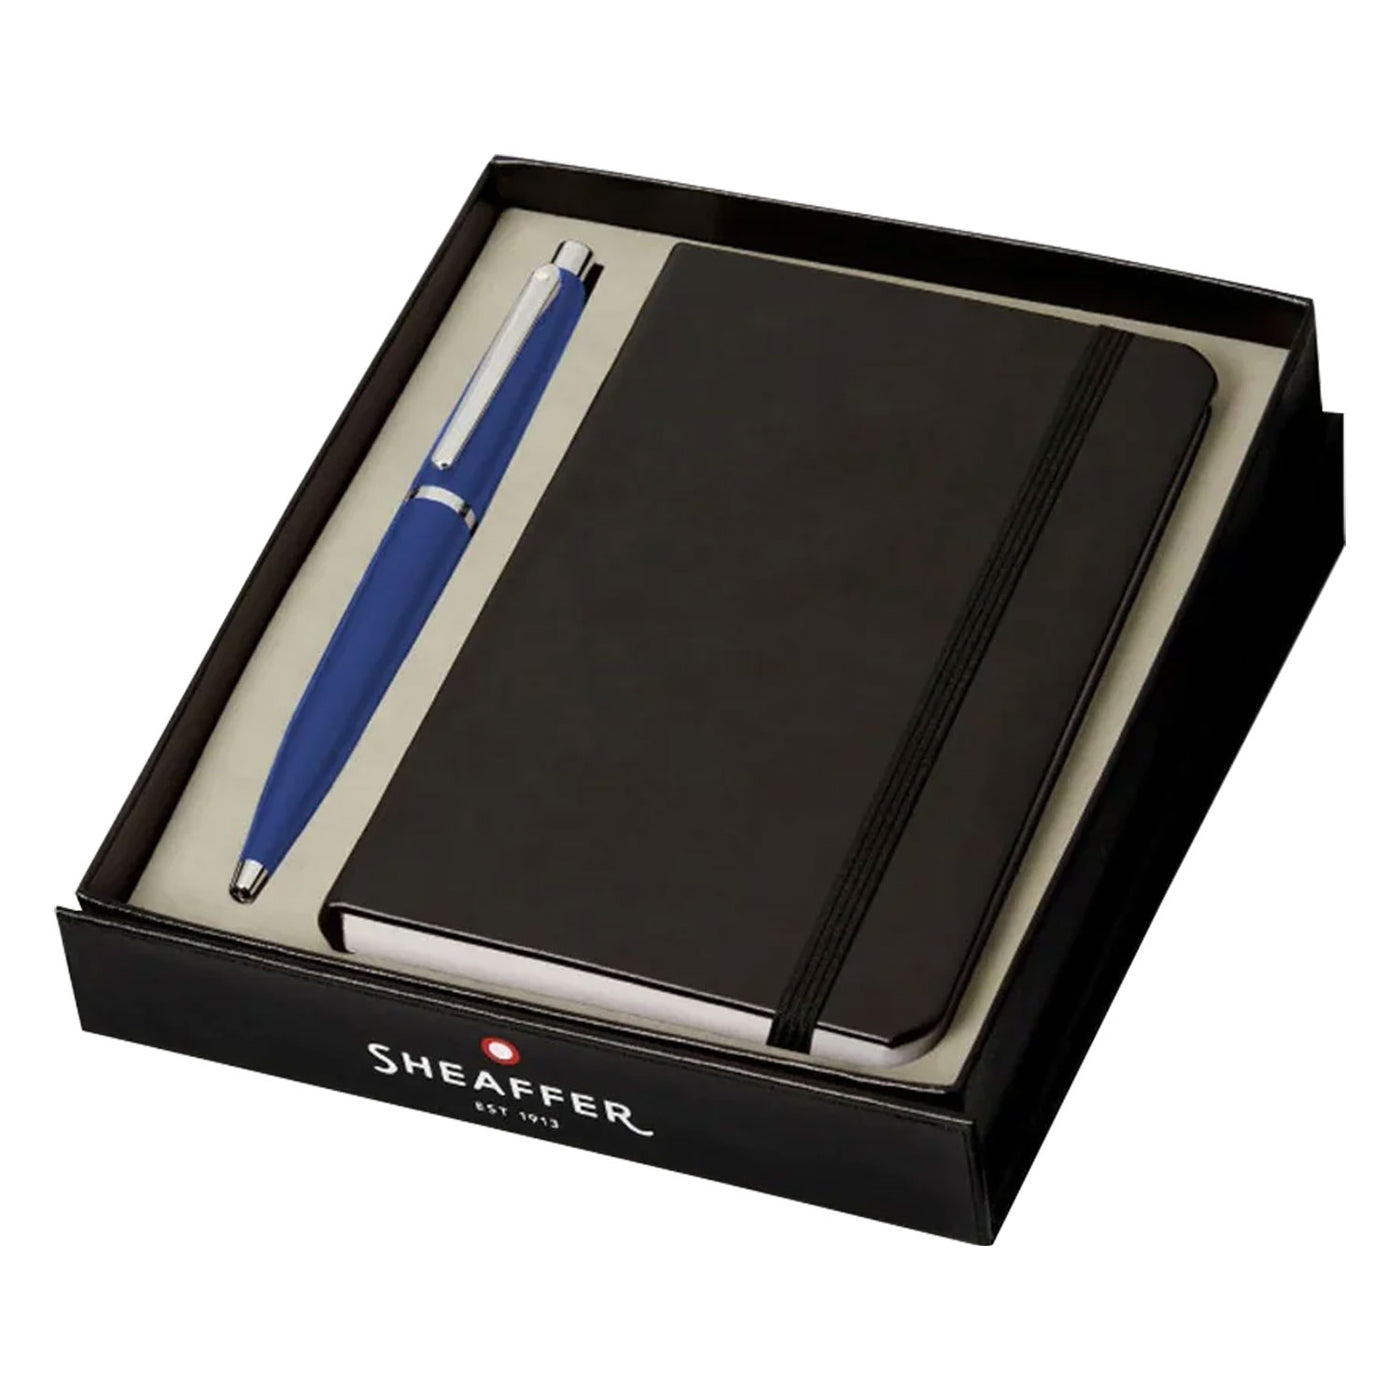 Sheaffer Gift Set - VFM Neon Blue Ball Pen with A6 Black Notebook 1